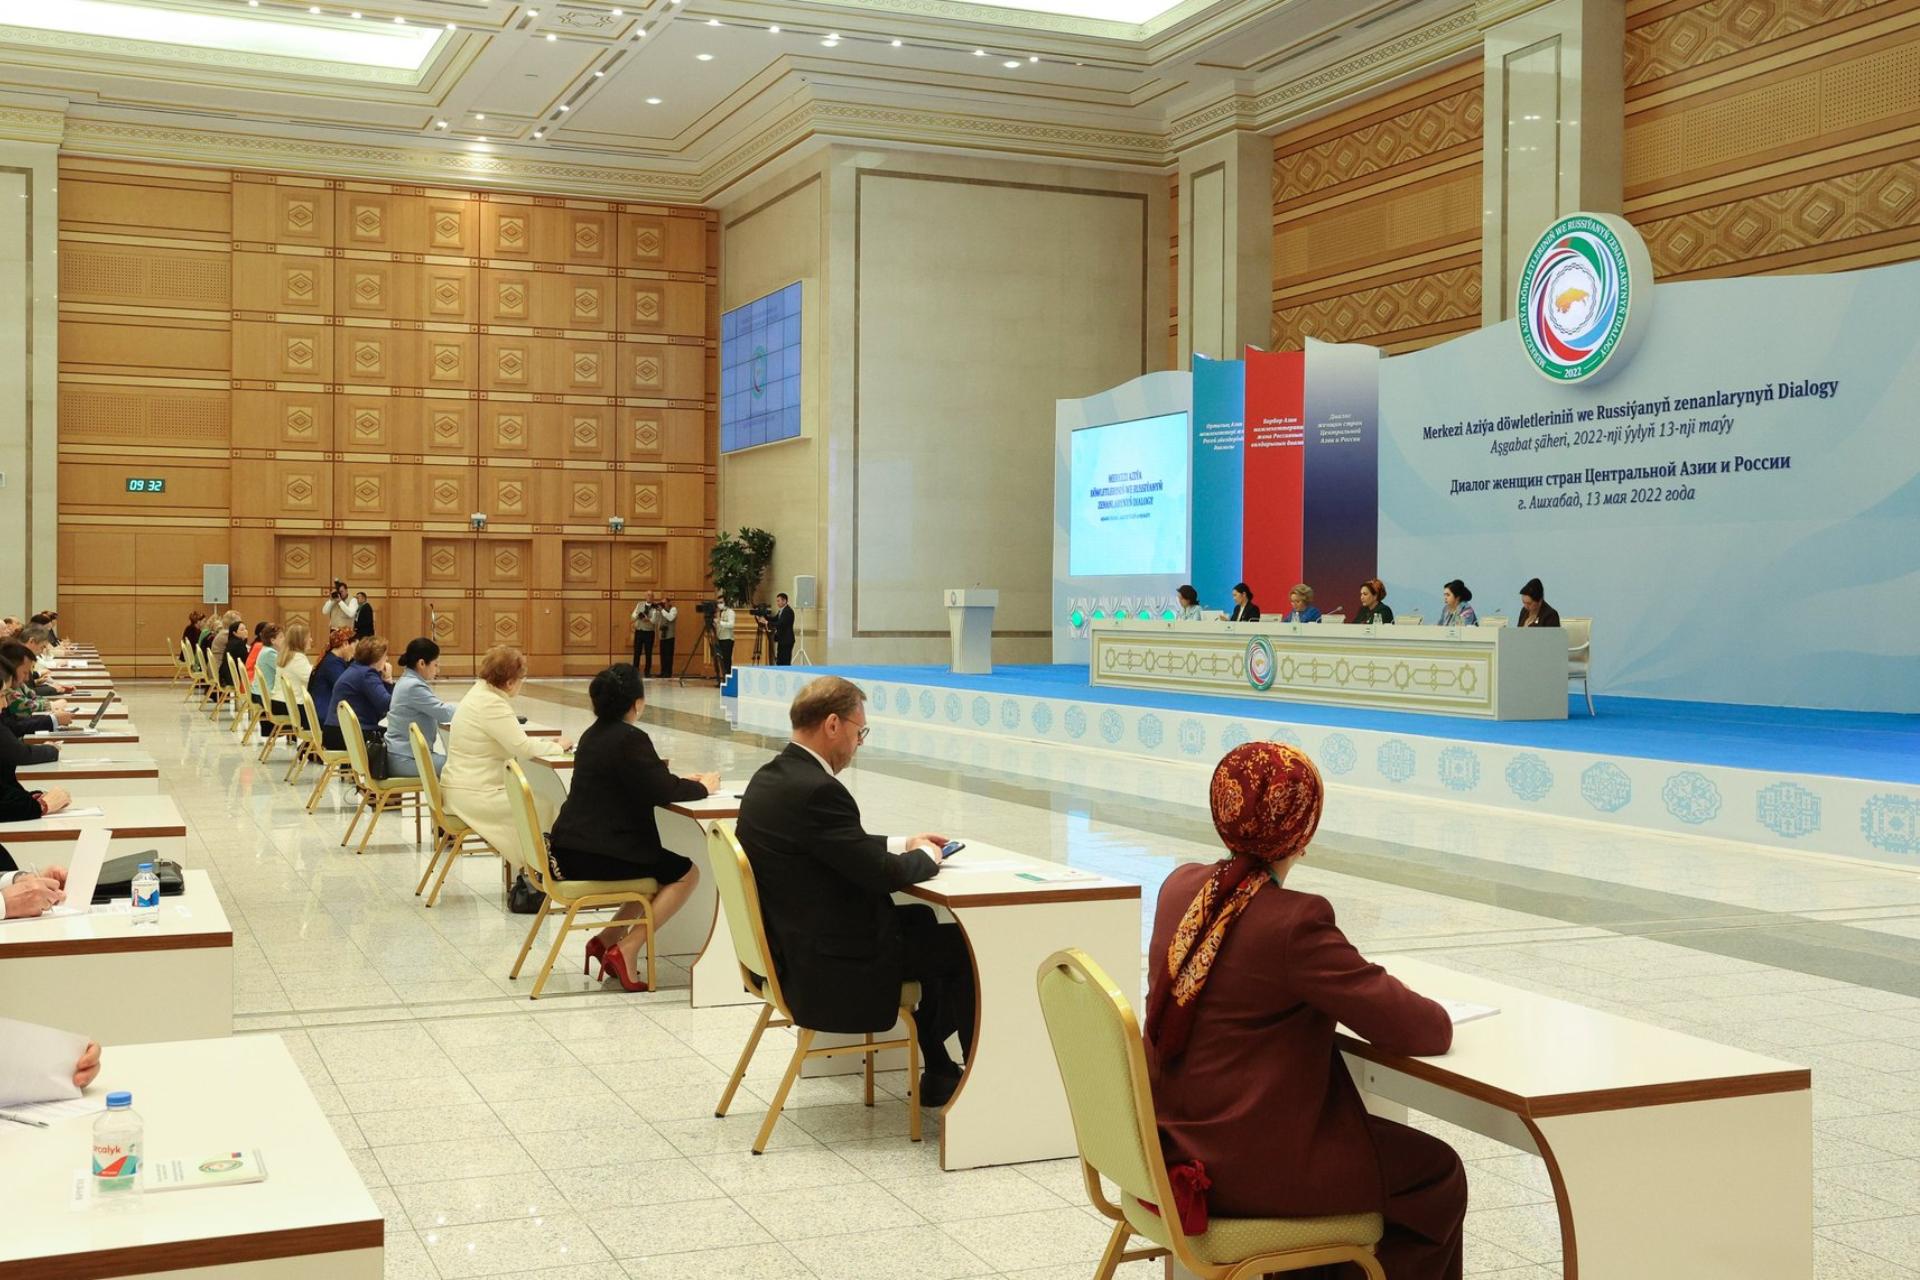 Пленарное заседание первого Диалога женщин стран Центральной Азии и России